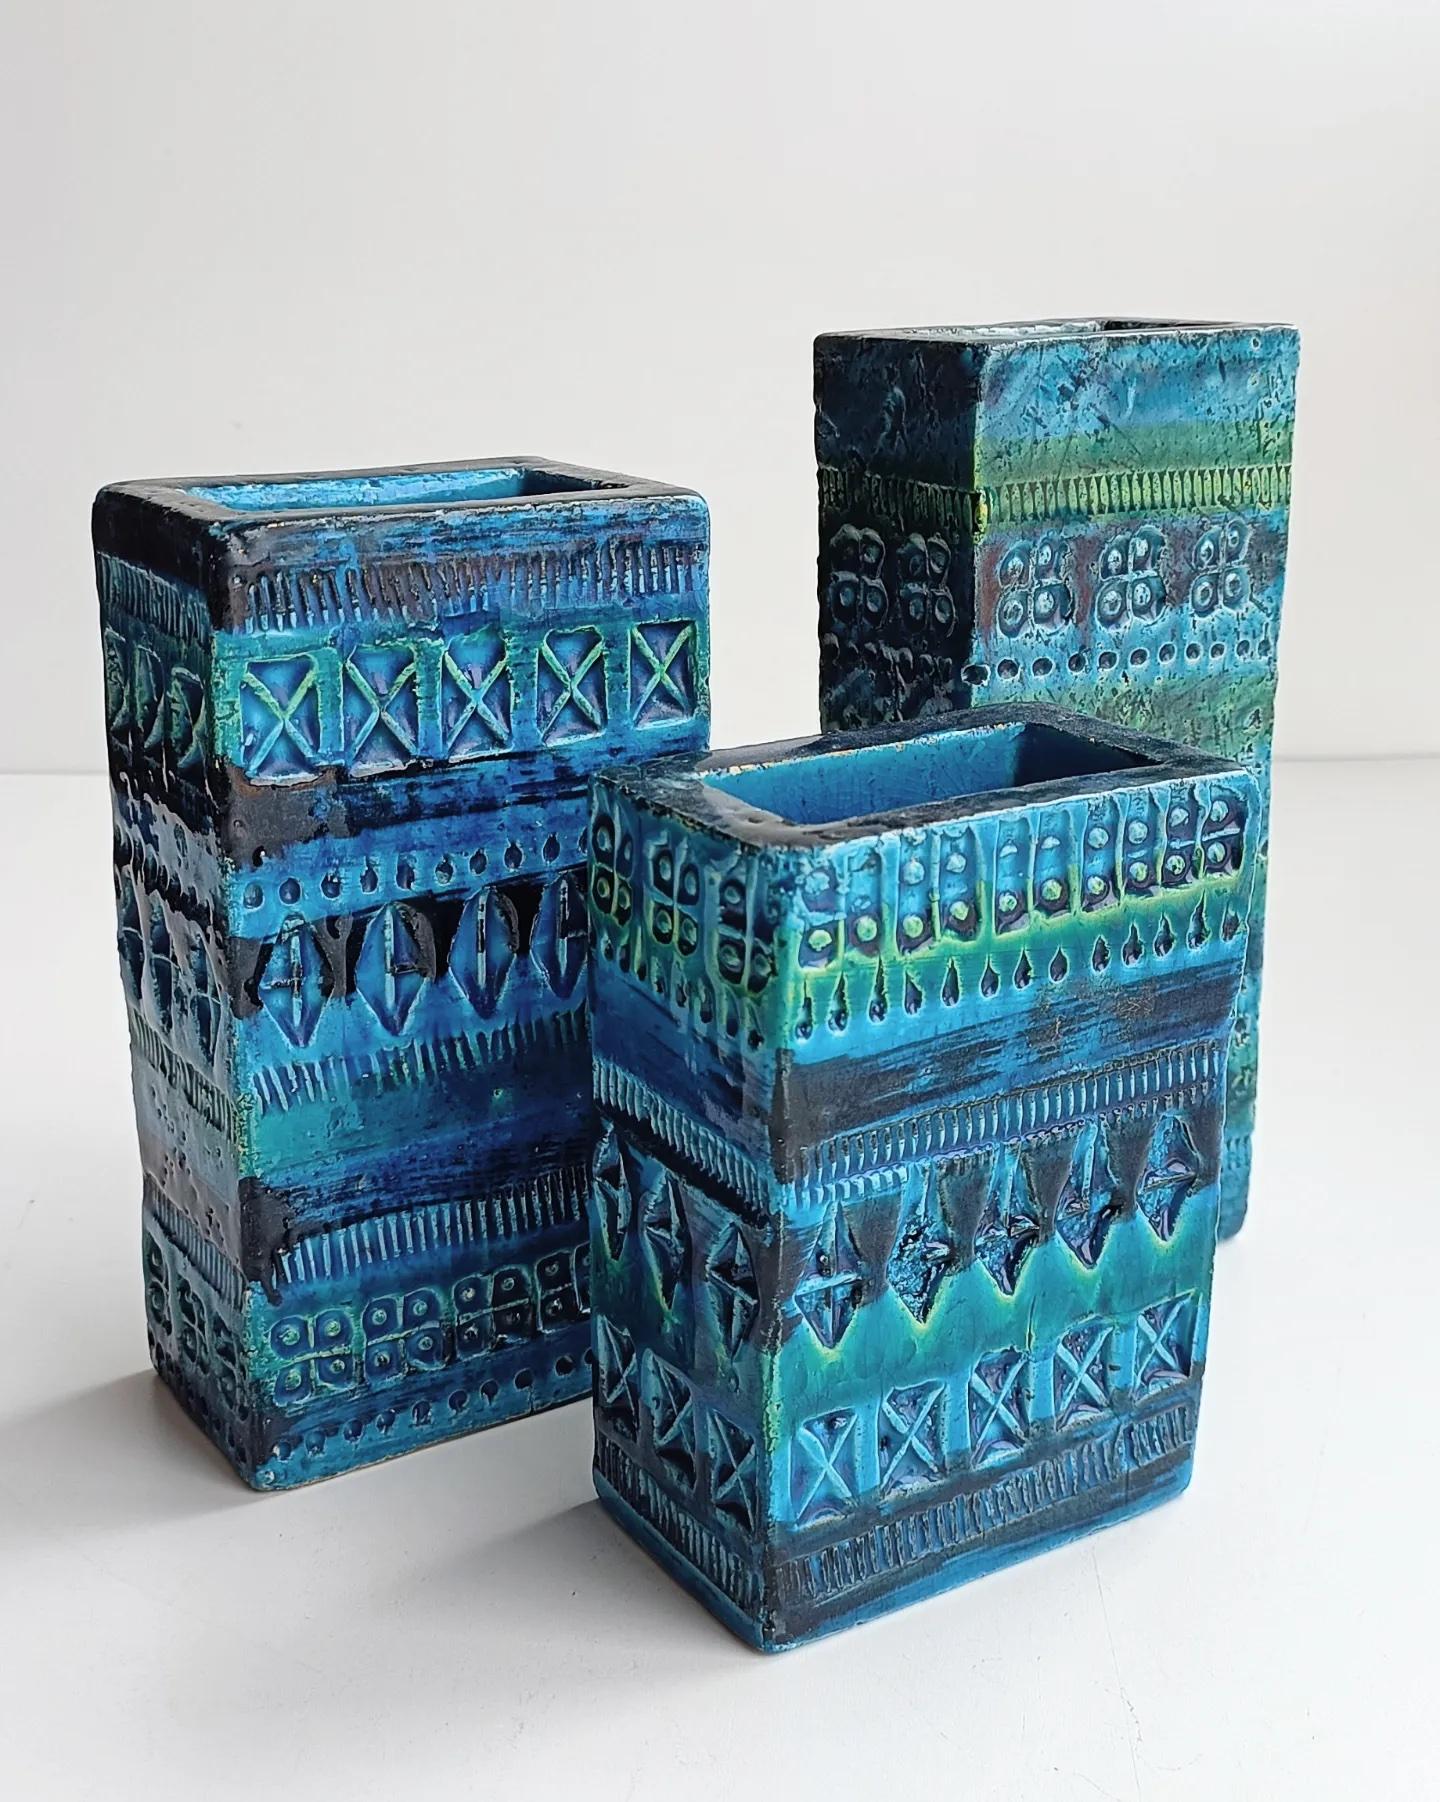 Set aus drei ziegelsteinförmigen Keramikvasen der kultigen Linie Rimini Blu von Aldo Londi für Bitossi Ceramiche. Handgefertigt in Flavia Montelupo, Italien, etwa in den 1960er Jahren. 

Alle drei tragen die unverwechselbaren Bitossi-Marken.

Die